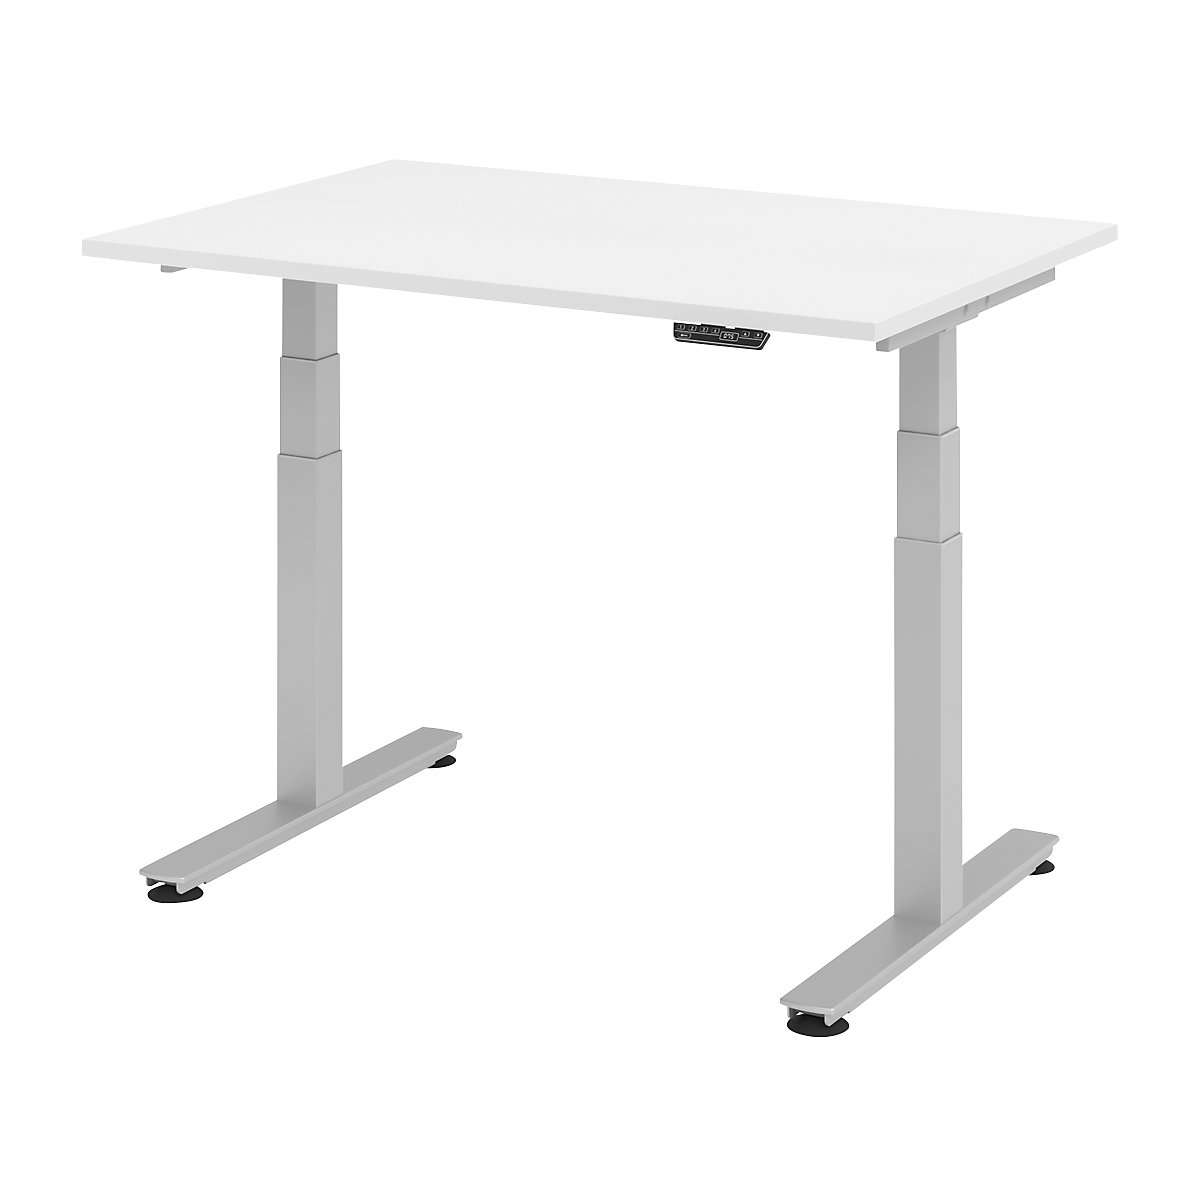 Psací stůl pro práci vestoje, s elektrickým přestavováním výšky UPLINER-2.0, podstavec s nohami ve tvaru T, šířka 1200 mm, bílá-12